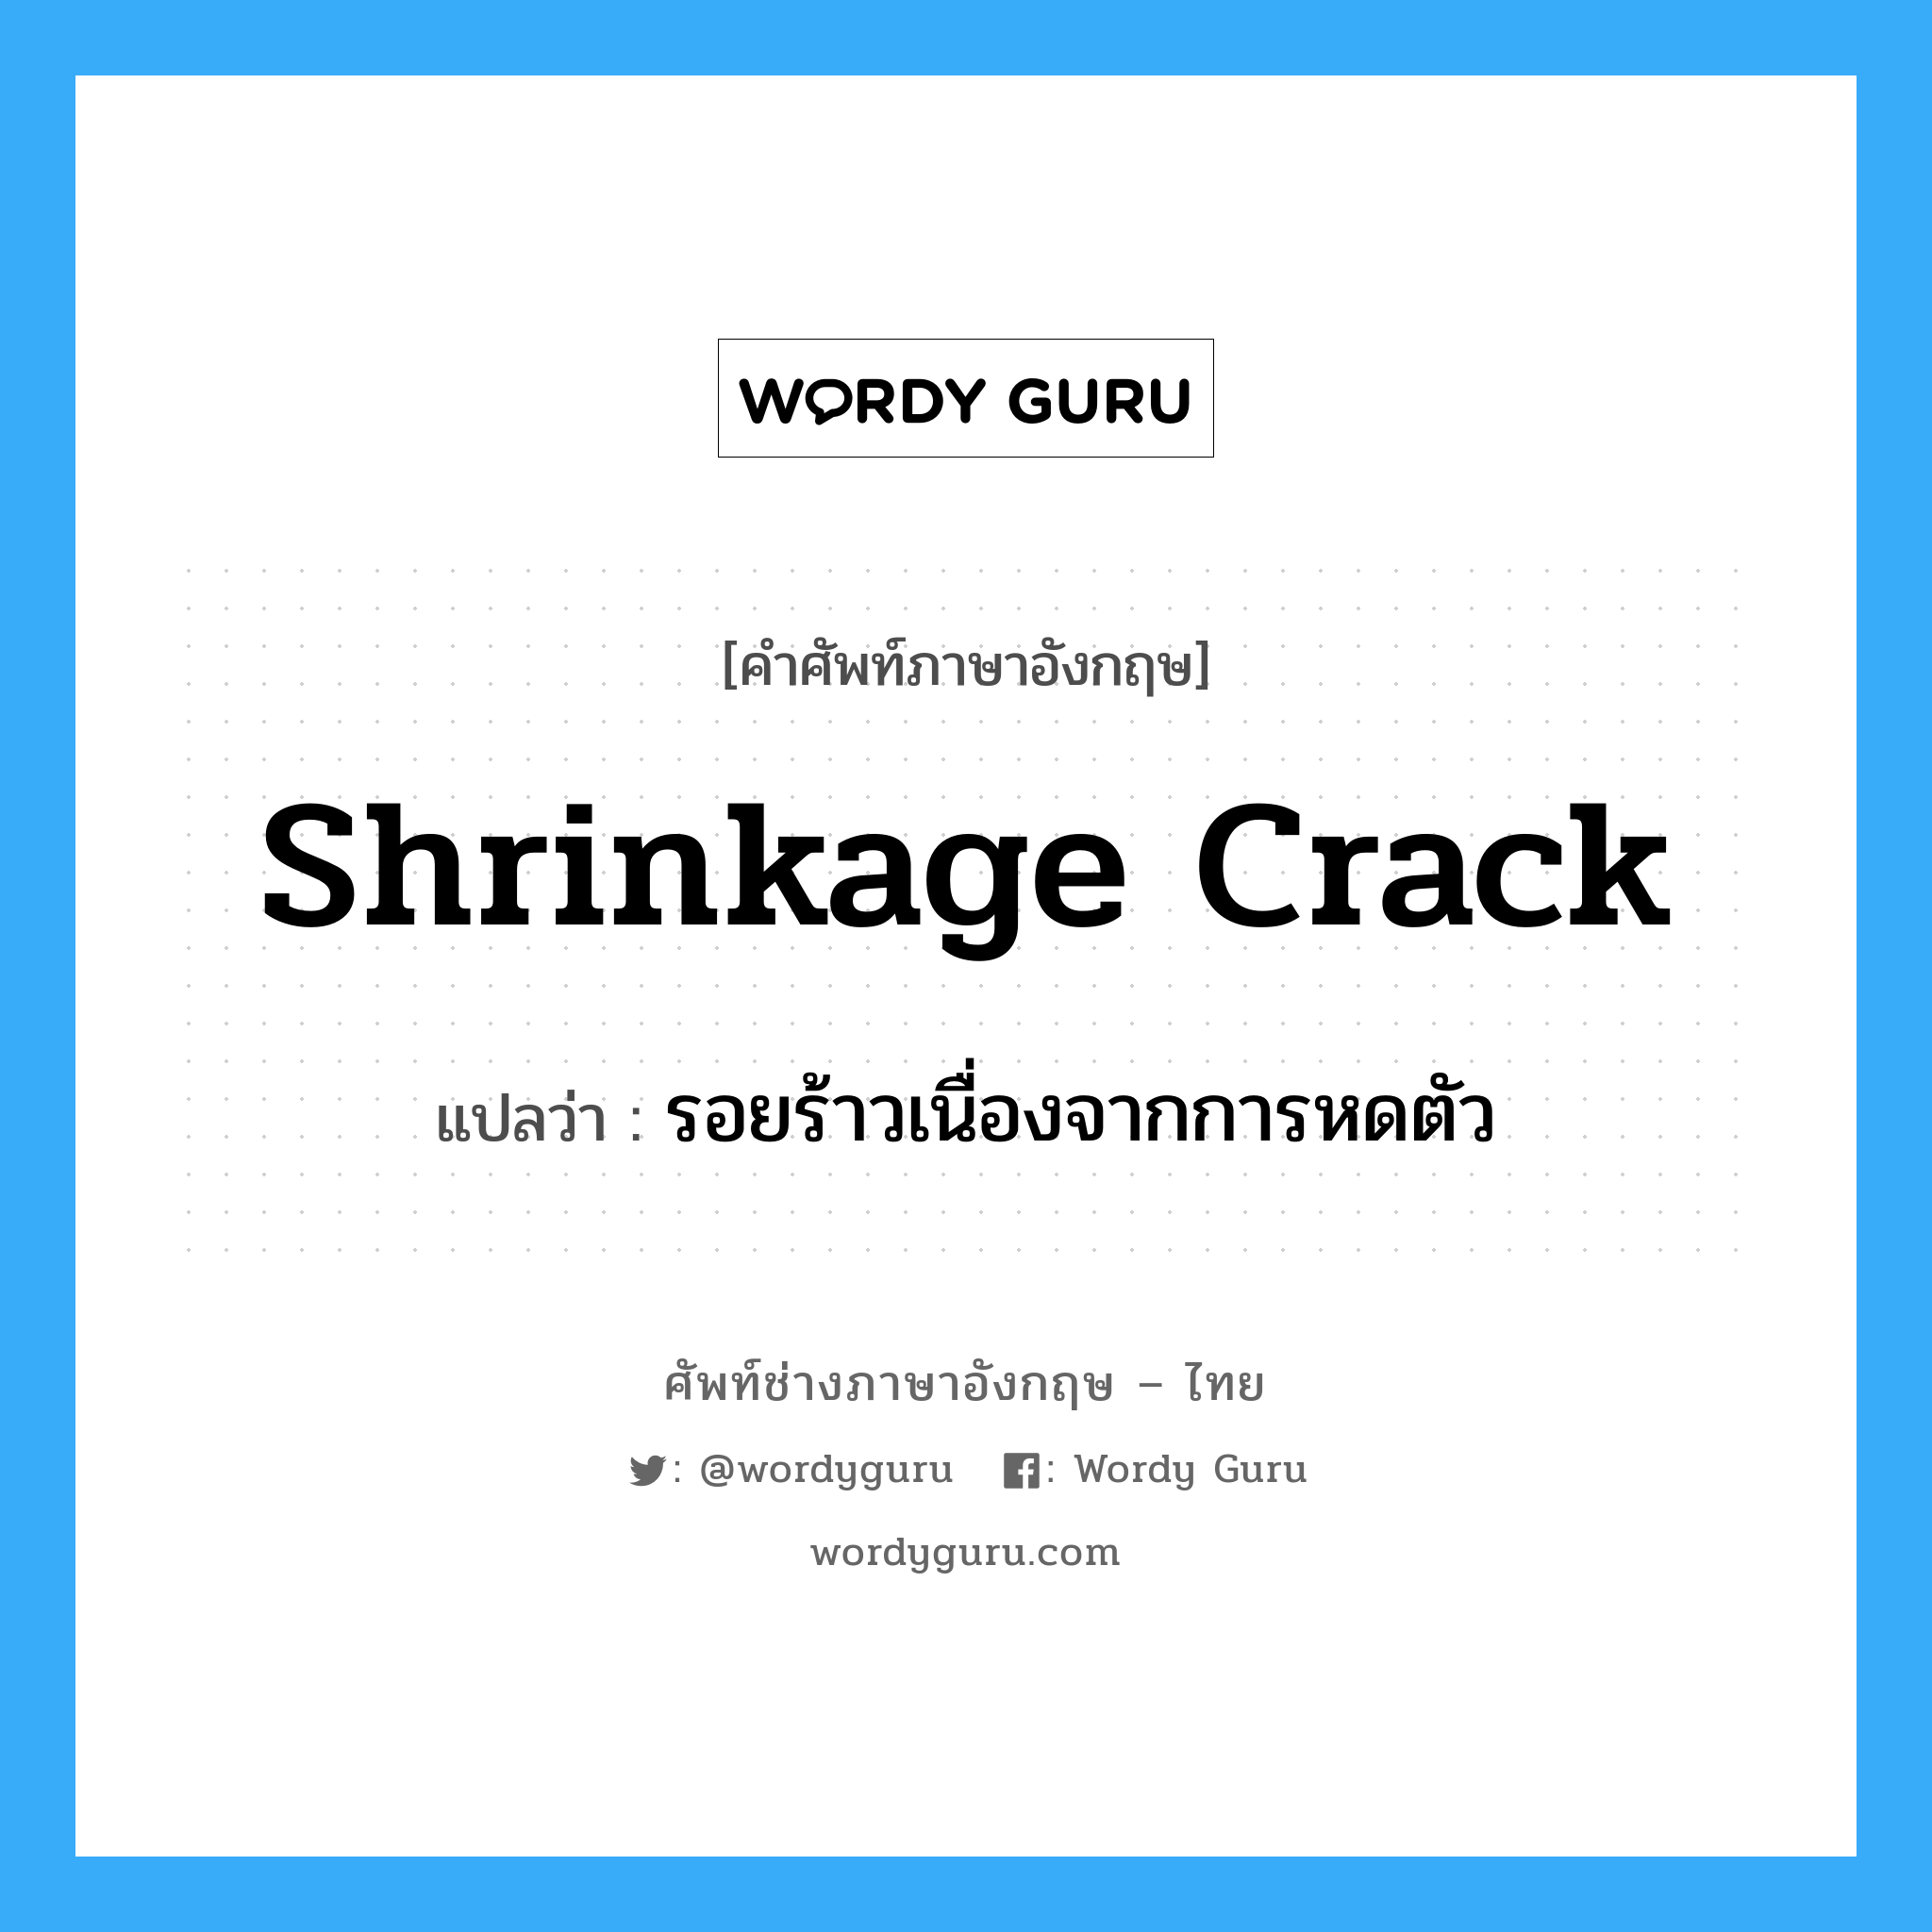 รอยร้าวเนื่องจากการหดตัว ภาษาอังกฤษ?, คำศัพท์ช่างภาษาอังกฤษ - ไทย รอยร้าวเนื่องจากการหดตัว คำศัพท์ภาษาอังกฤษ รอยร้าวเนื่องจากการหดตัว แปลว่า shrinkage crack